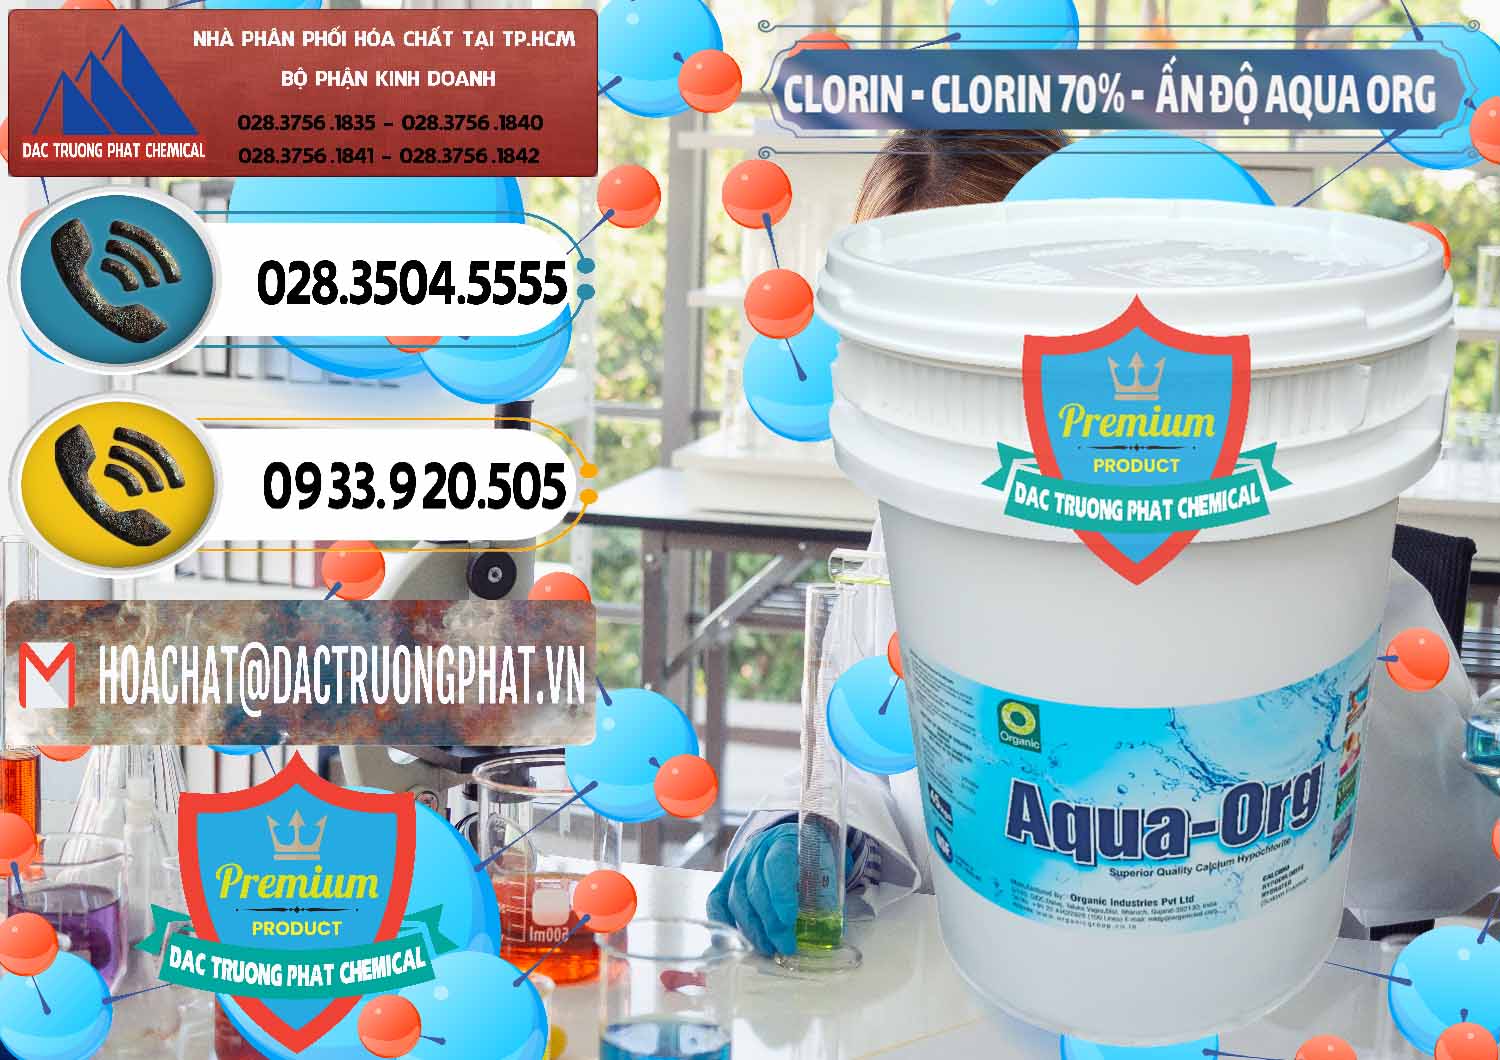 Đơn vị chuyên cung cấp - bán Chlorine – Clorin Ấn Độ Aqua ORG Organic India - 0051 - Cty chuyên kinh doanh ( phân phối ) hóa chất tại TP.HCM - hoachatdetnhuom.vn